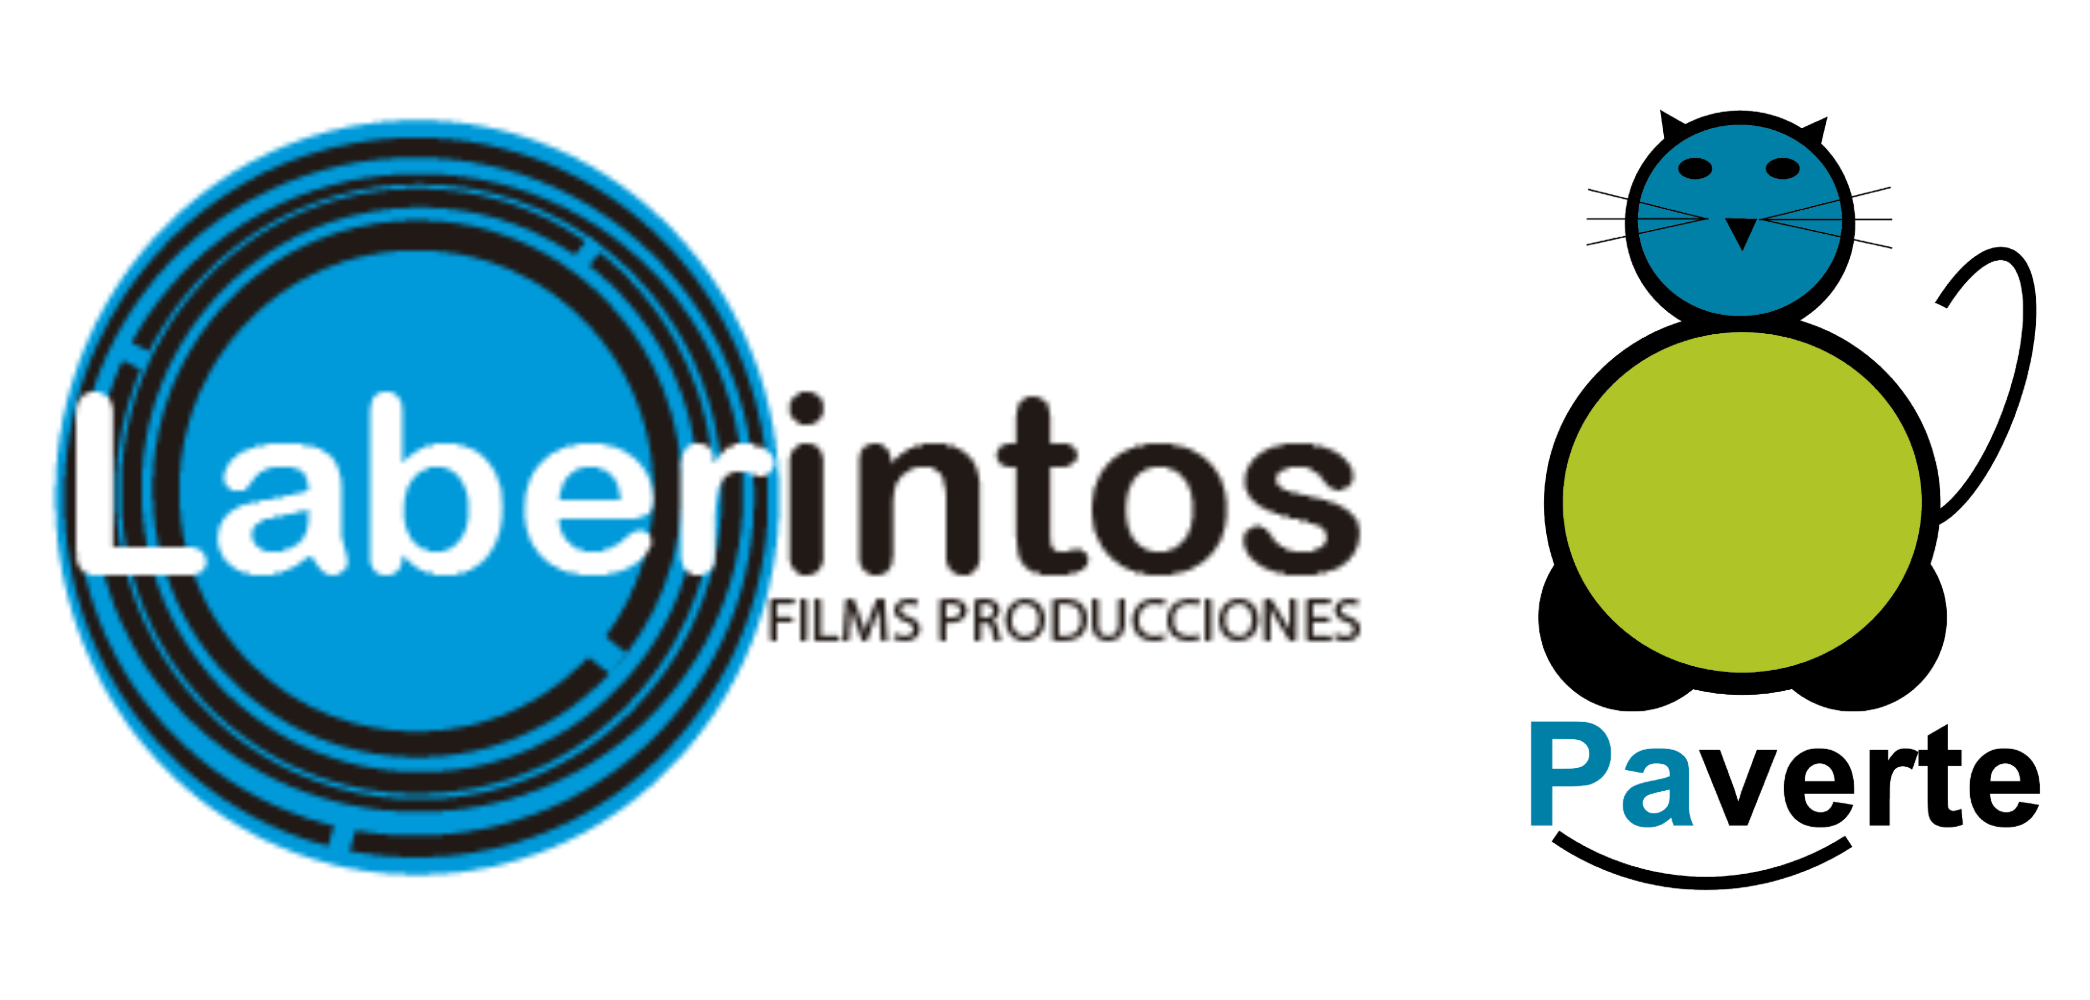 Laberintos Films Producciones